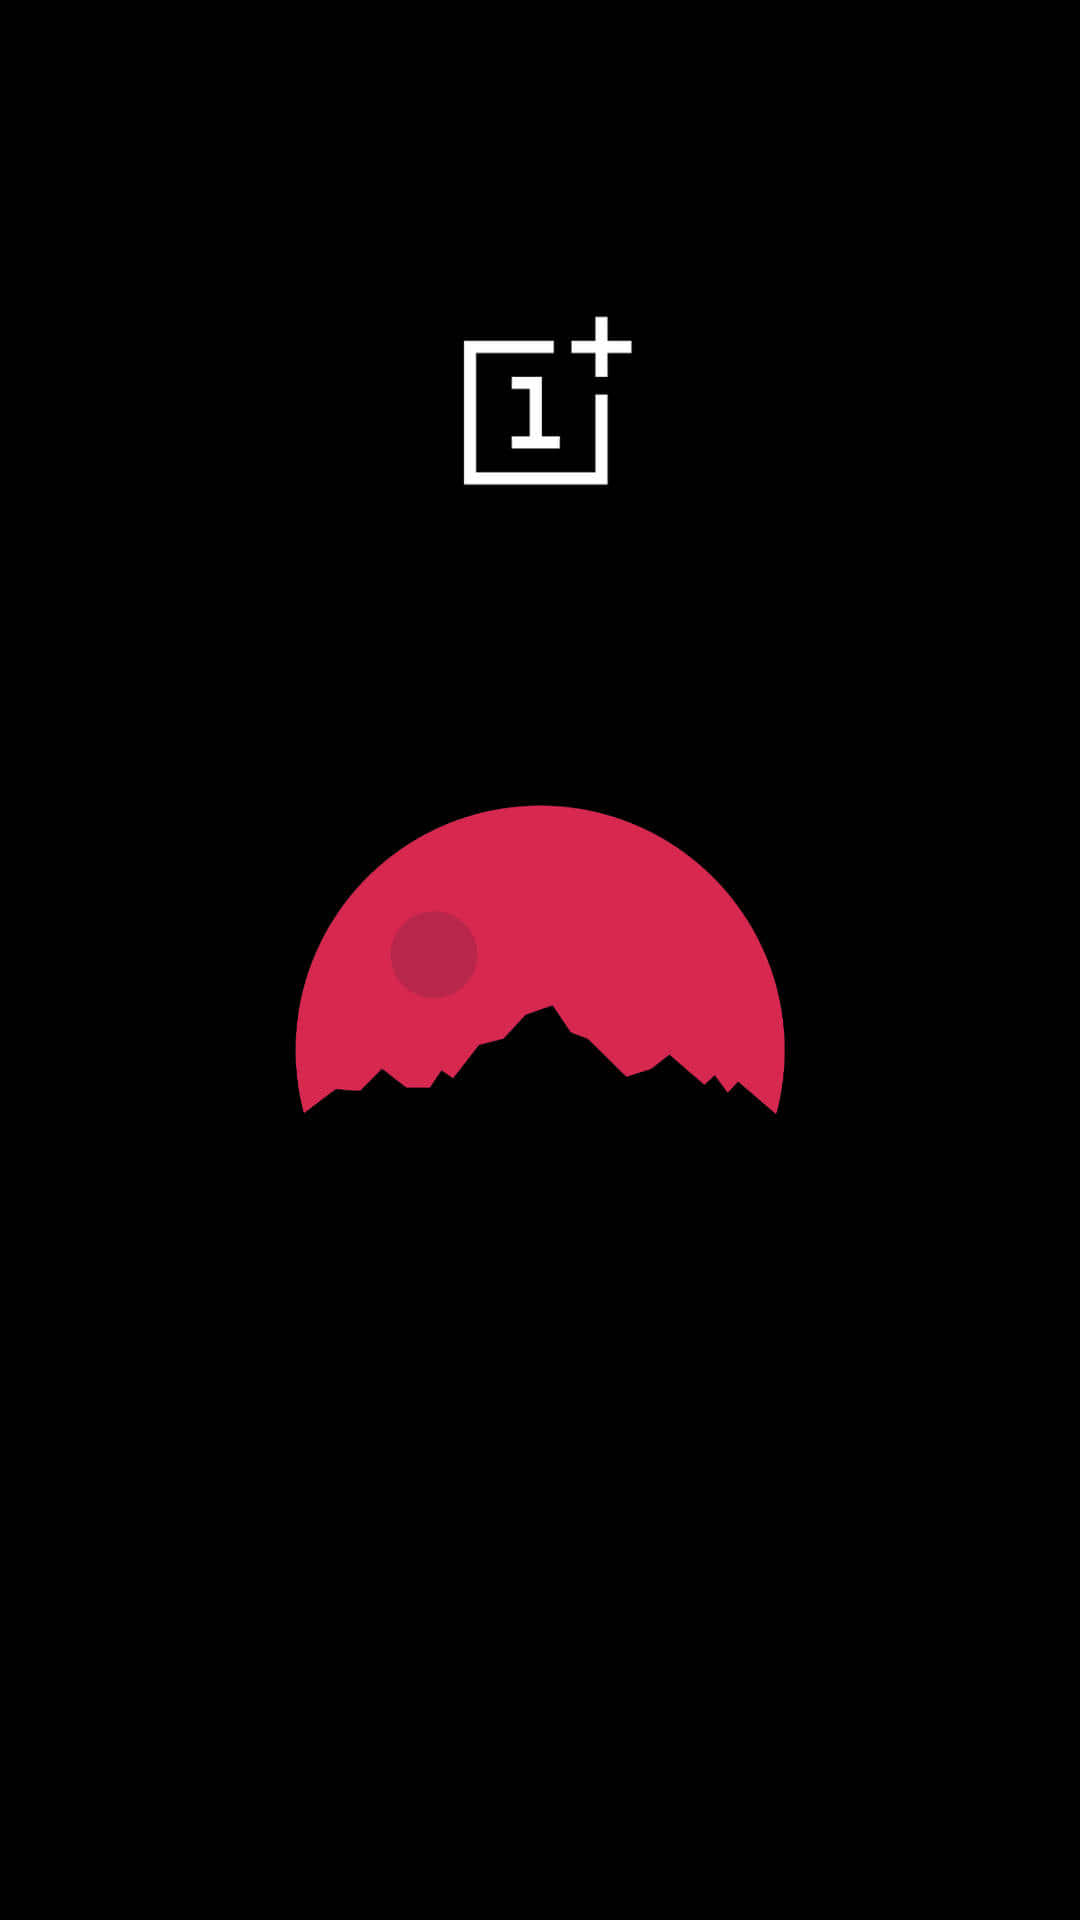 1+silueta De Montaña Rosa Con Luna Fondo de pantalla